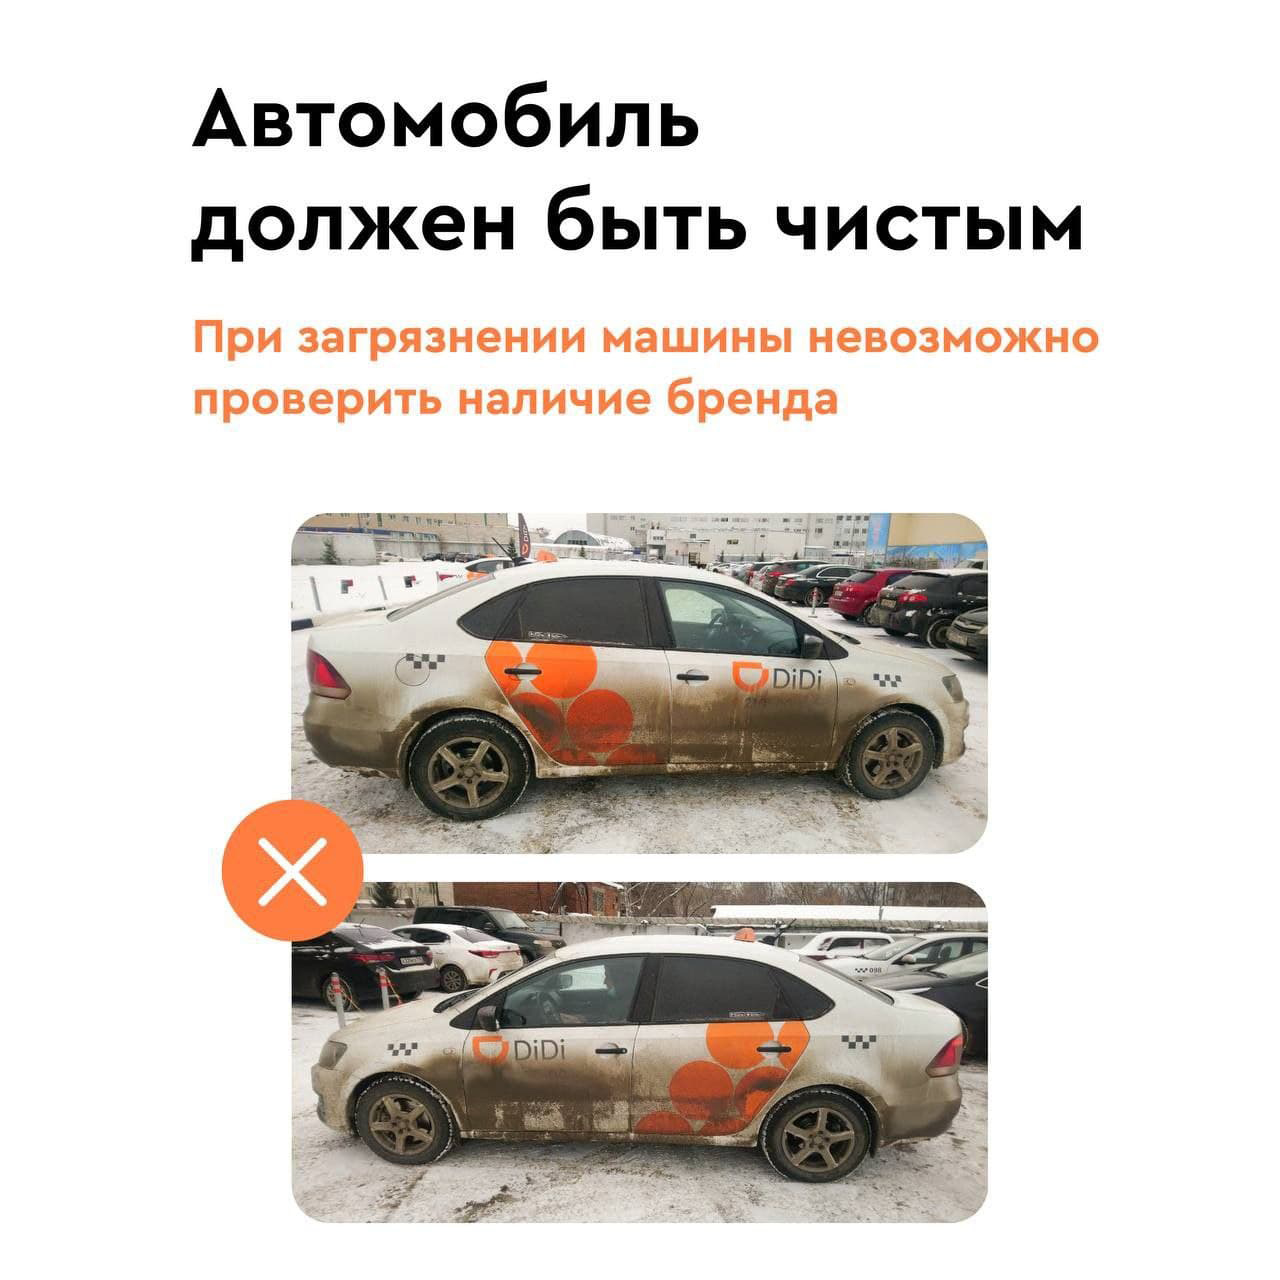 Диди такси в Воронеже